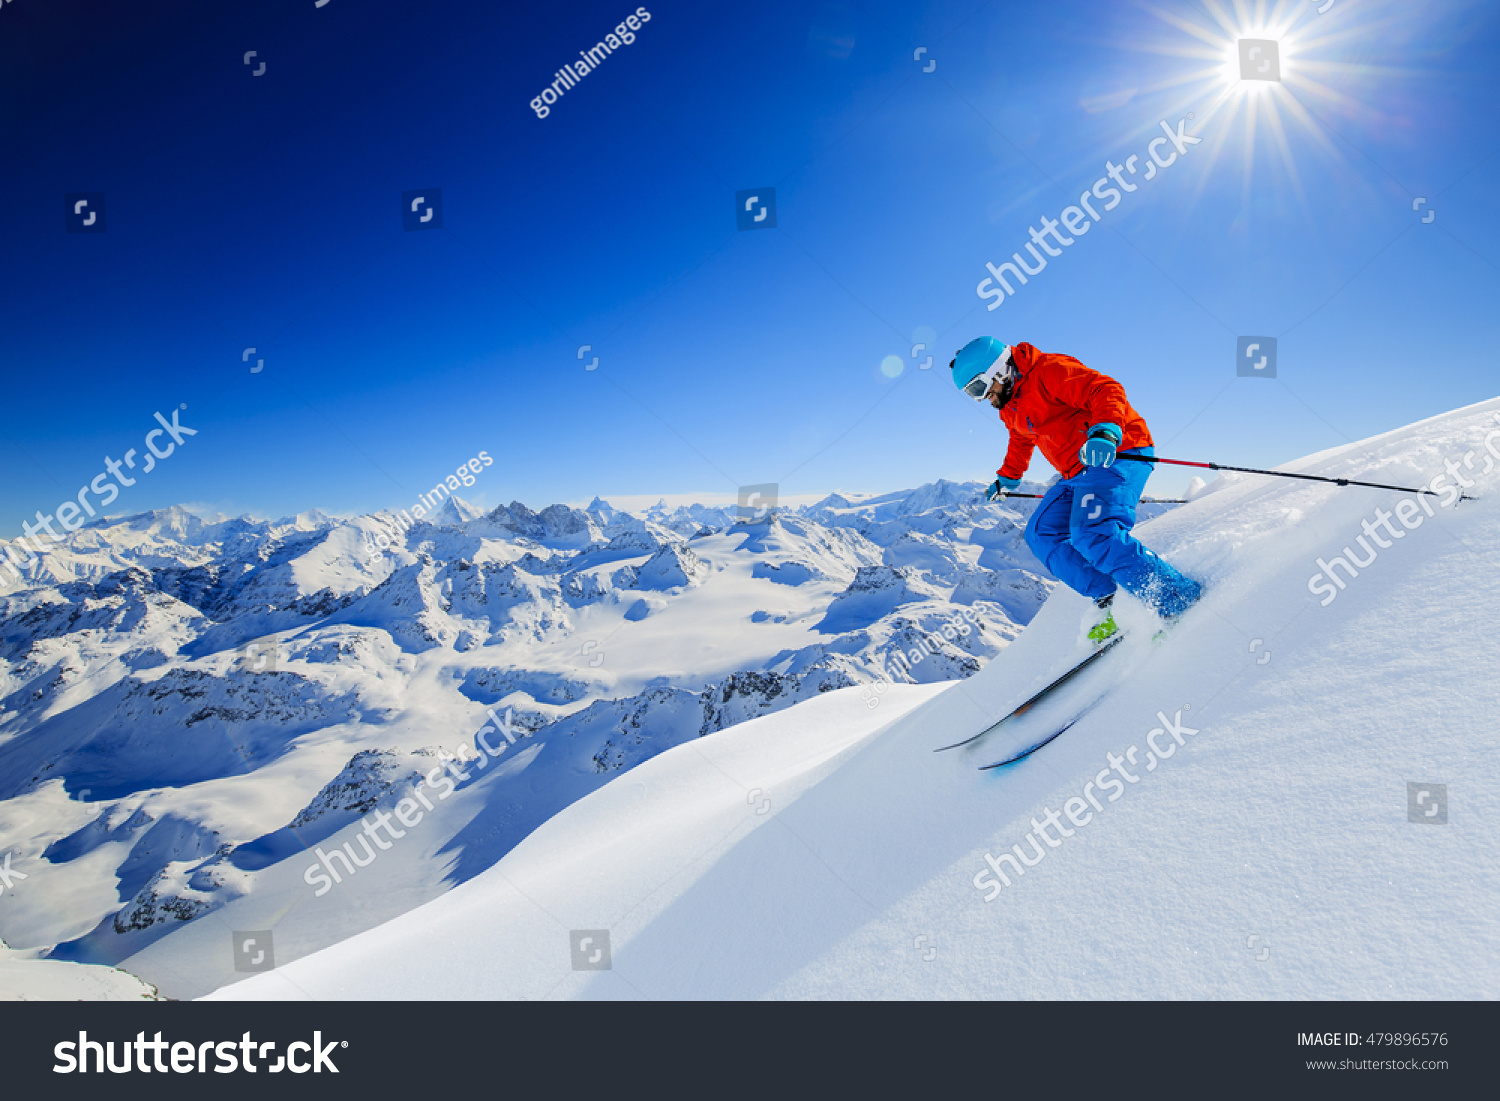 Skier skiing downhill in high mountains in fresh powder snow. Snow mountain range in background. Mt Fort Peak Alps region Switzerland. #479896576